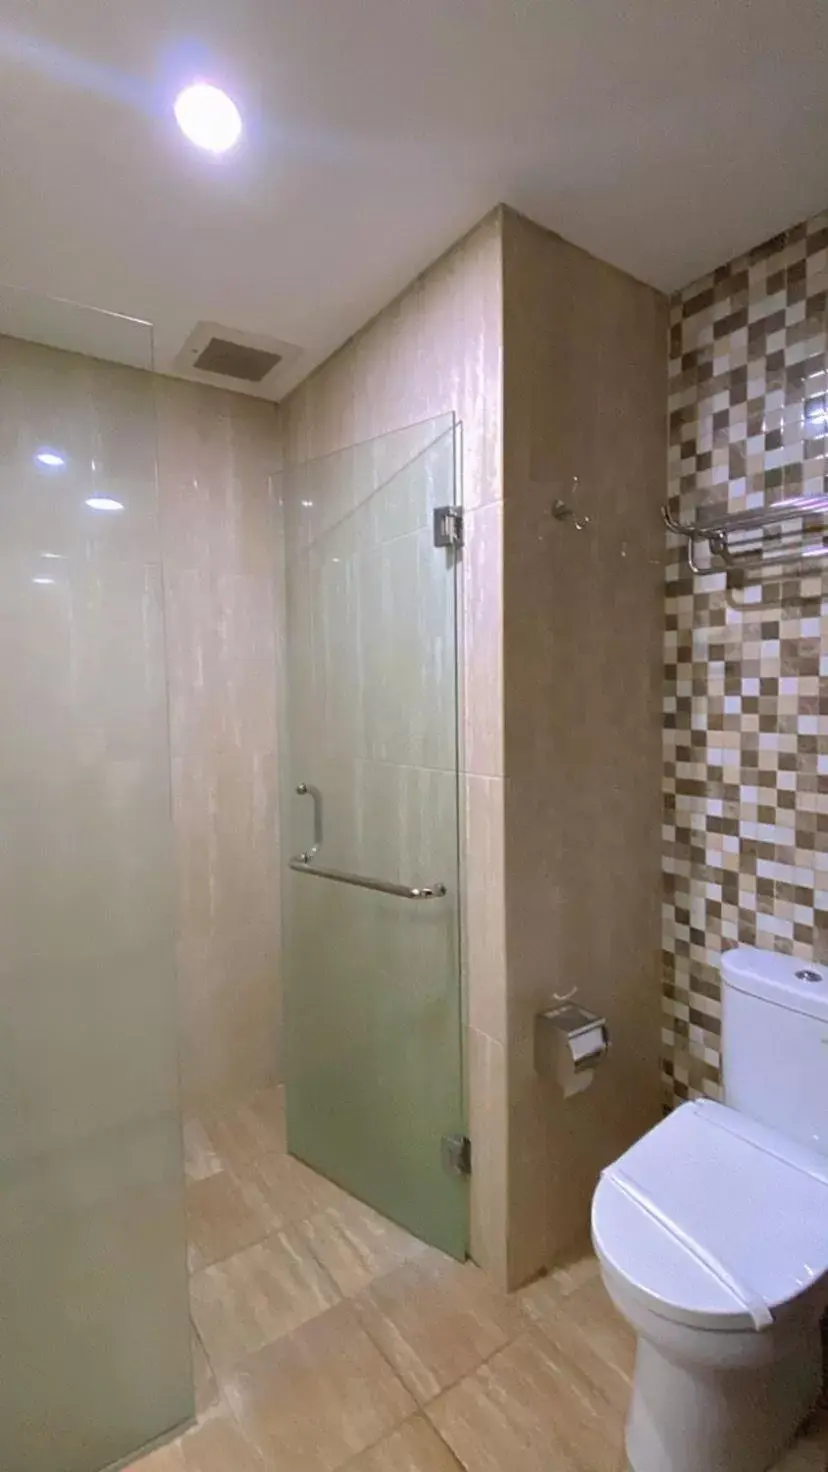 Toilet, Bathroom in Cipta Hotel Wahid Hasyim